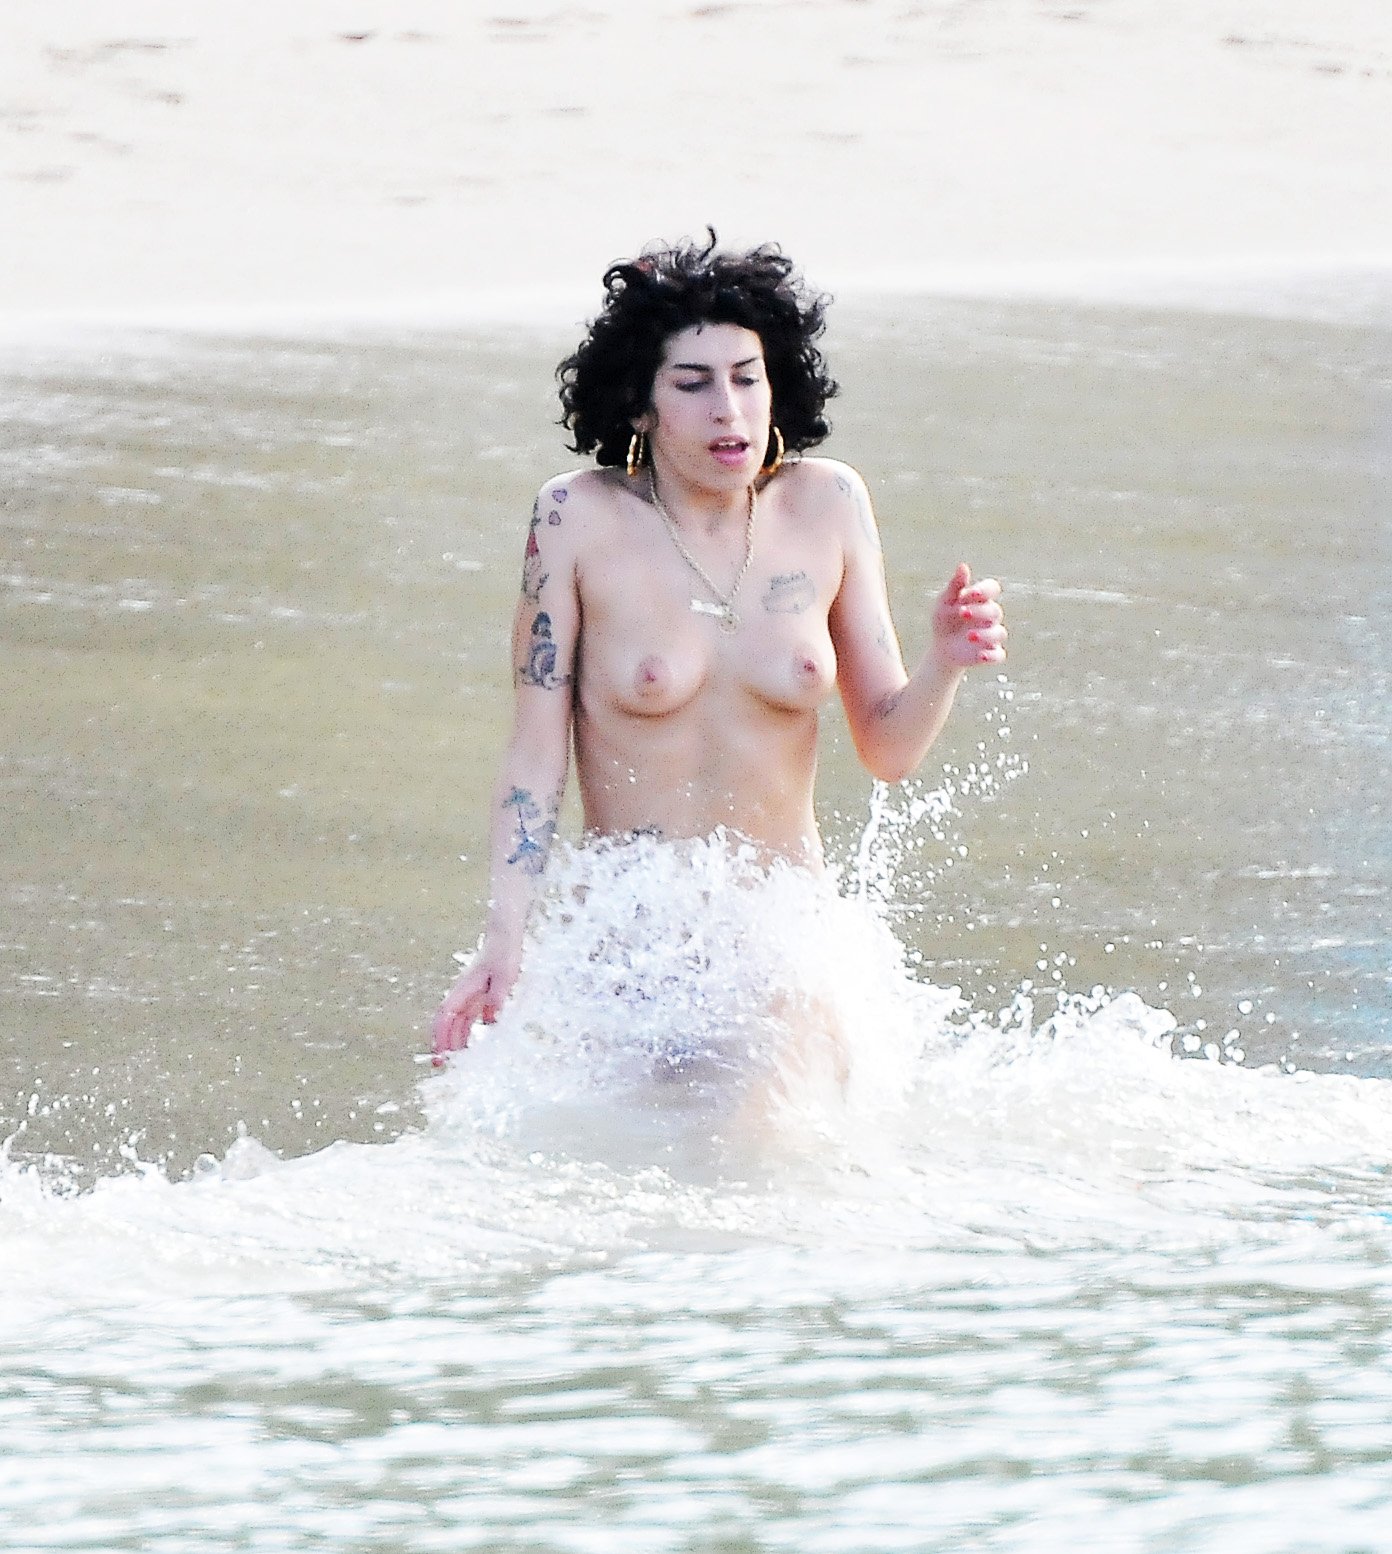 ahmed hamoksha recommends Amy Winehouse Naked